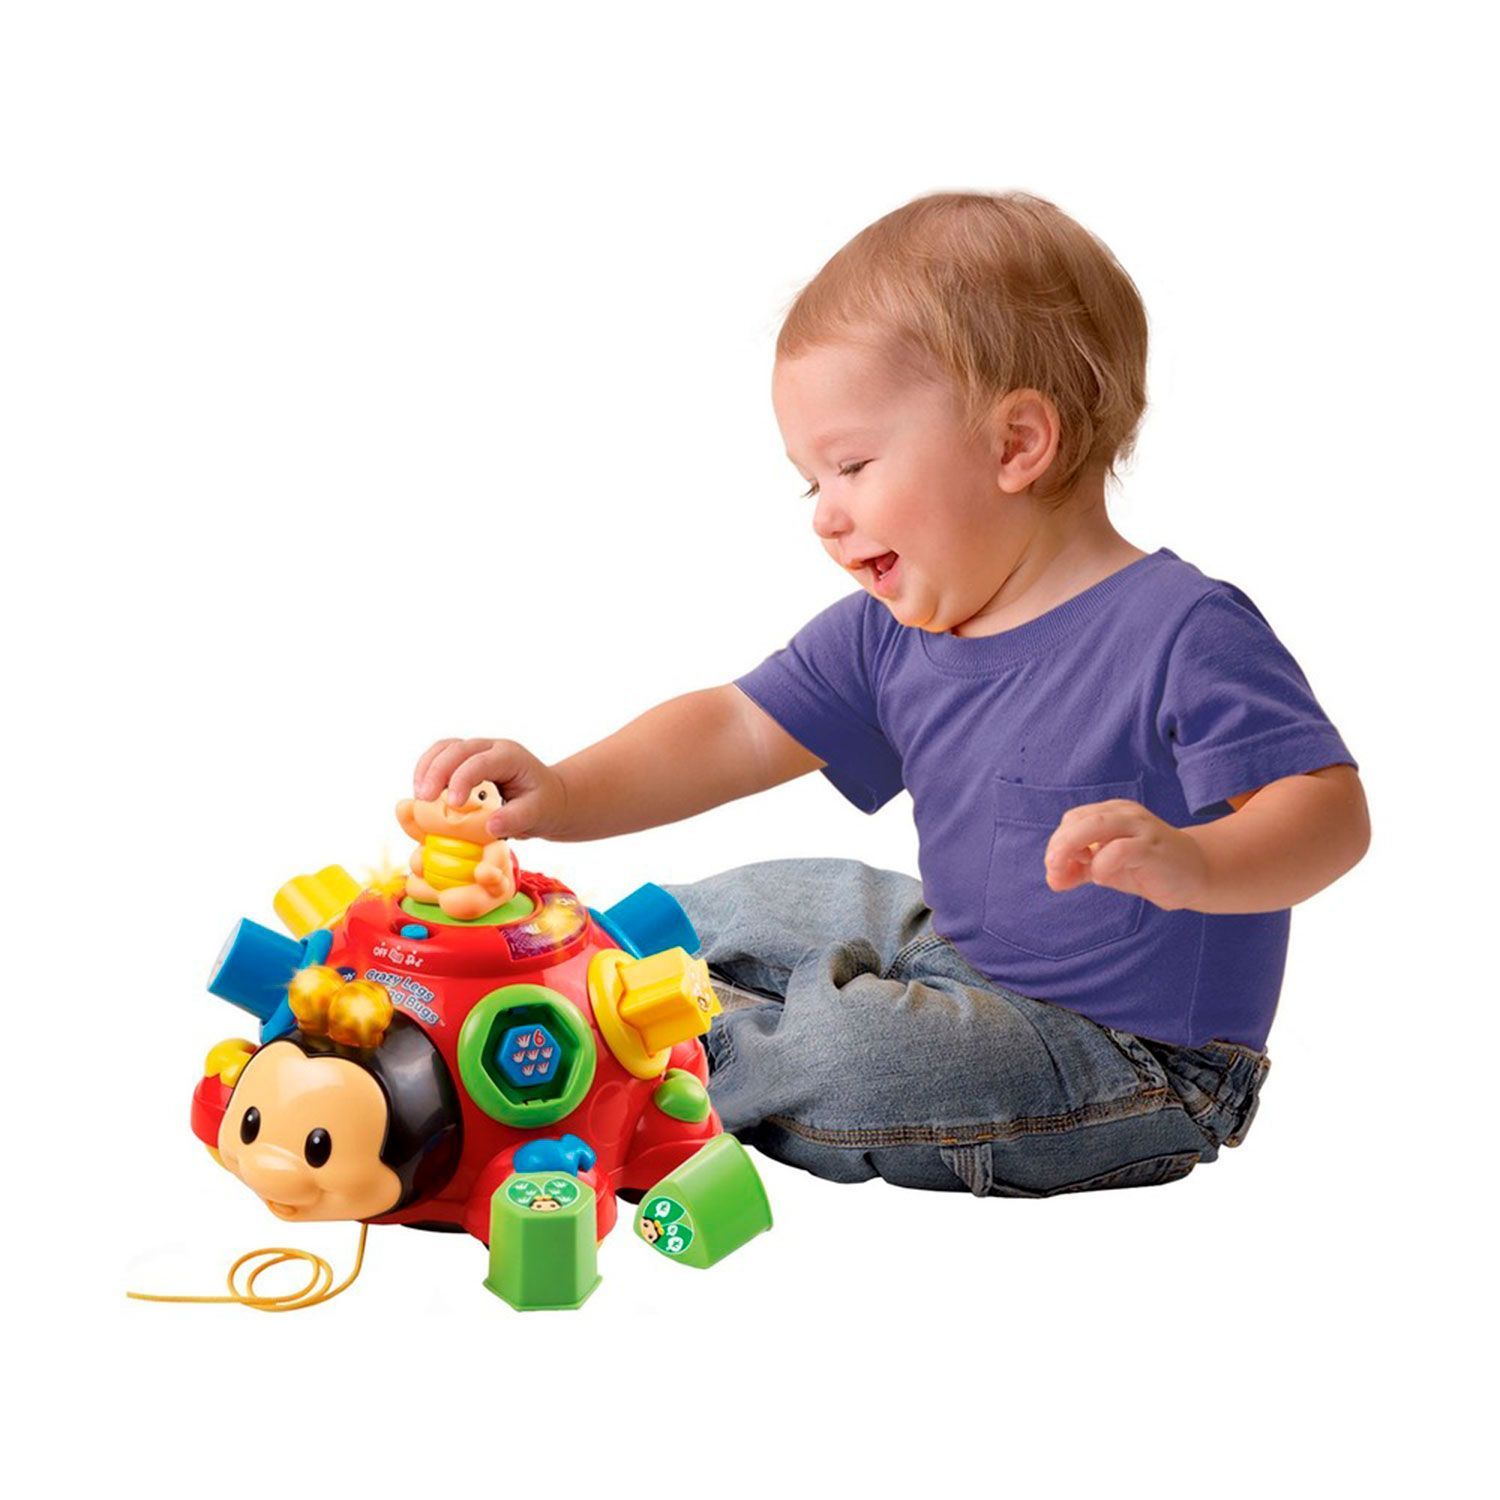 Подарок на 6 месяцев. Vtech Божья коровка. Каталка-игрушка Vtech говорящий Жук (80-111226) со звуковыми эффектами. Detski igruski. Развивающиеся игрушки для детей.